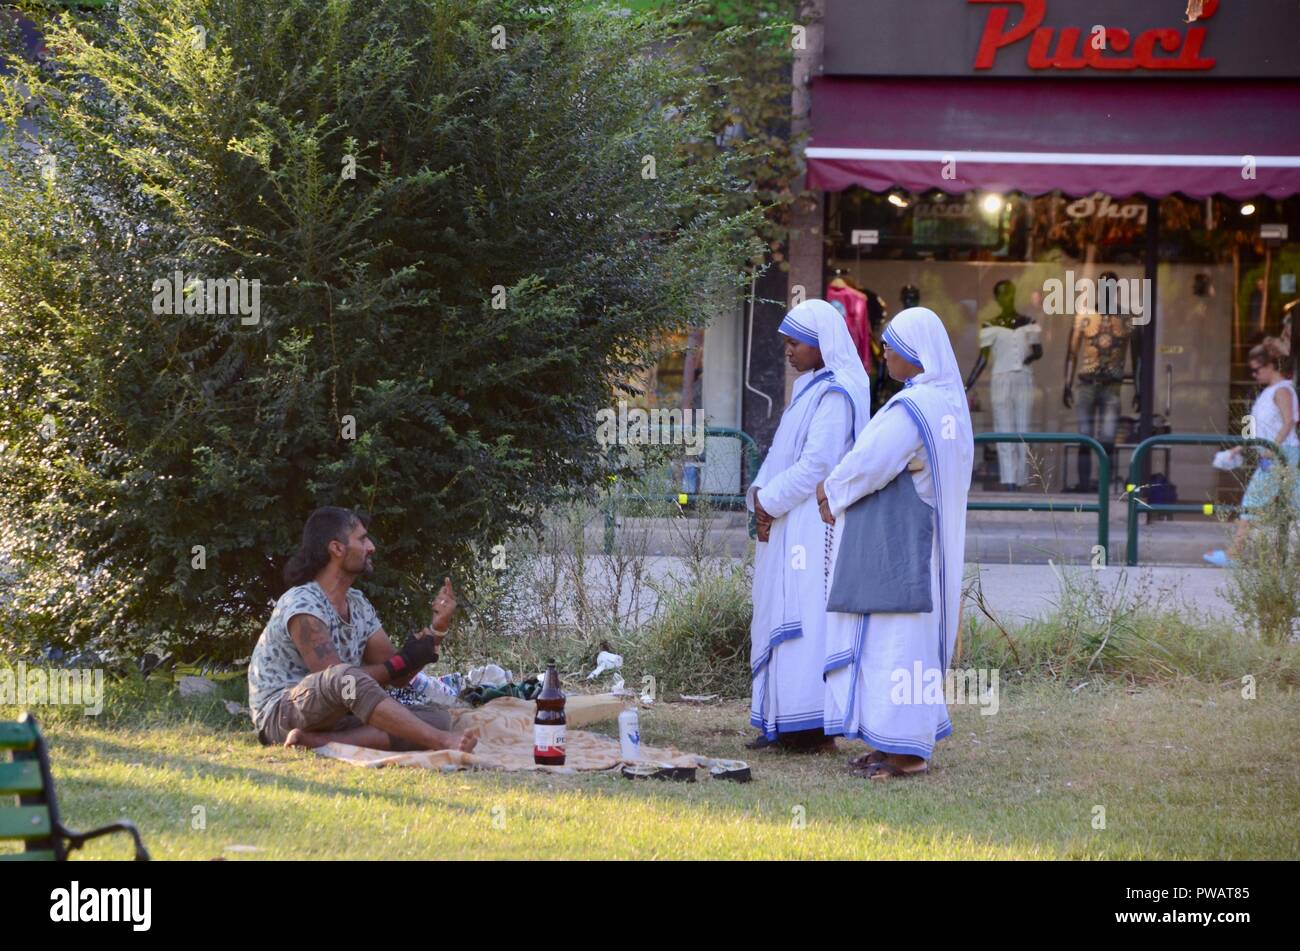 Deux religieuses de la congrégation des Missionnaires de la Charité à Tirana Albanie parler à un sans-abri dans un parc Banque D'Images